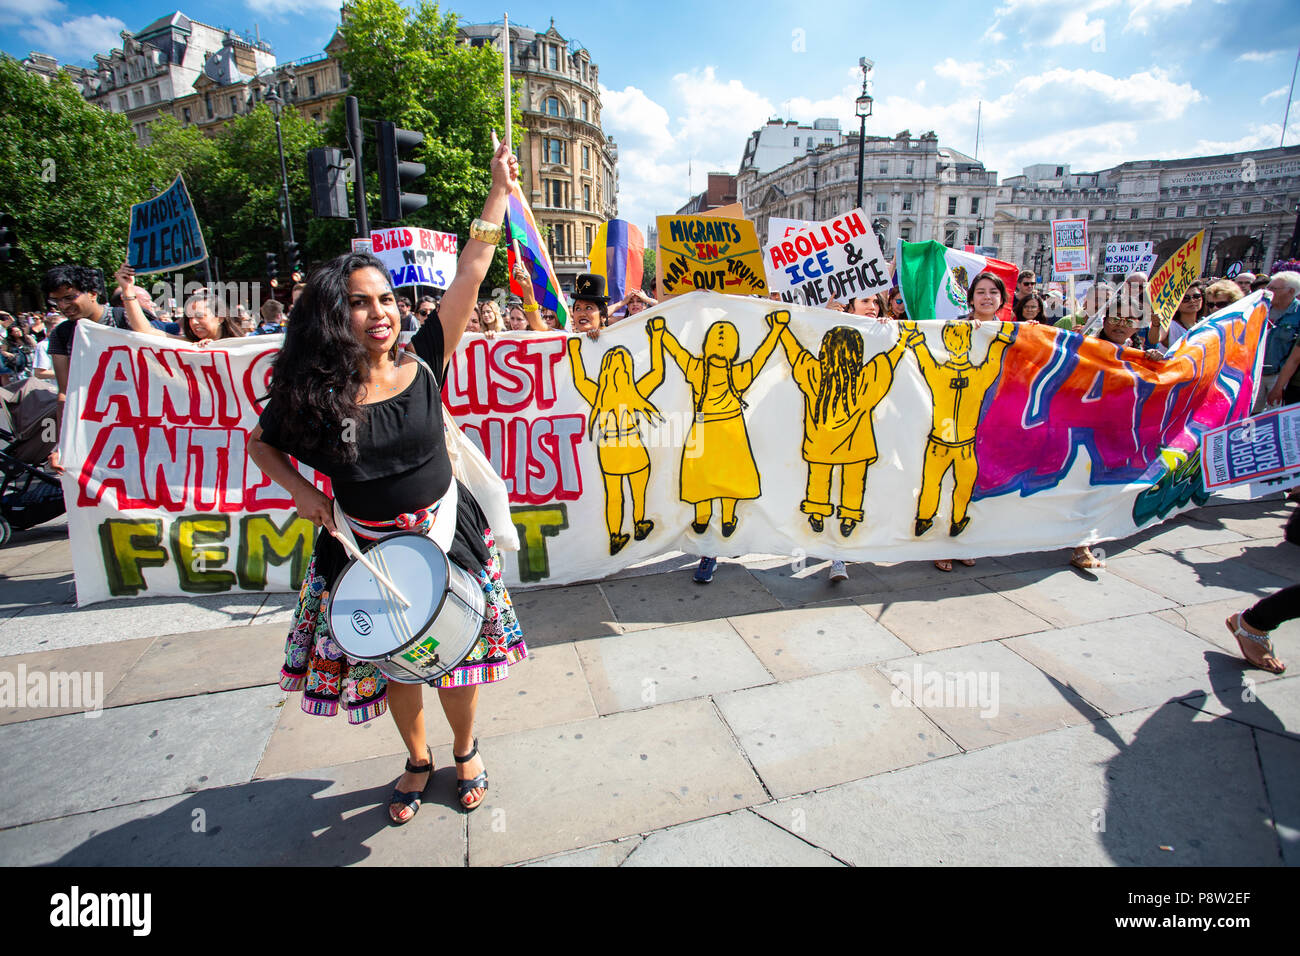 Londres/Royaume-Uni - Juillet 13, 2018 : Manifestations contre l'atout de Donald continuer avec une marche dans le centre de Londres, en terminant à Trafalgar Square pour un rassemblement. Saisie de Trafalgar Square. Crédit : Martin Leitch/Alamy Live News Banque D'Images